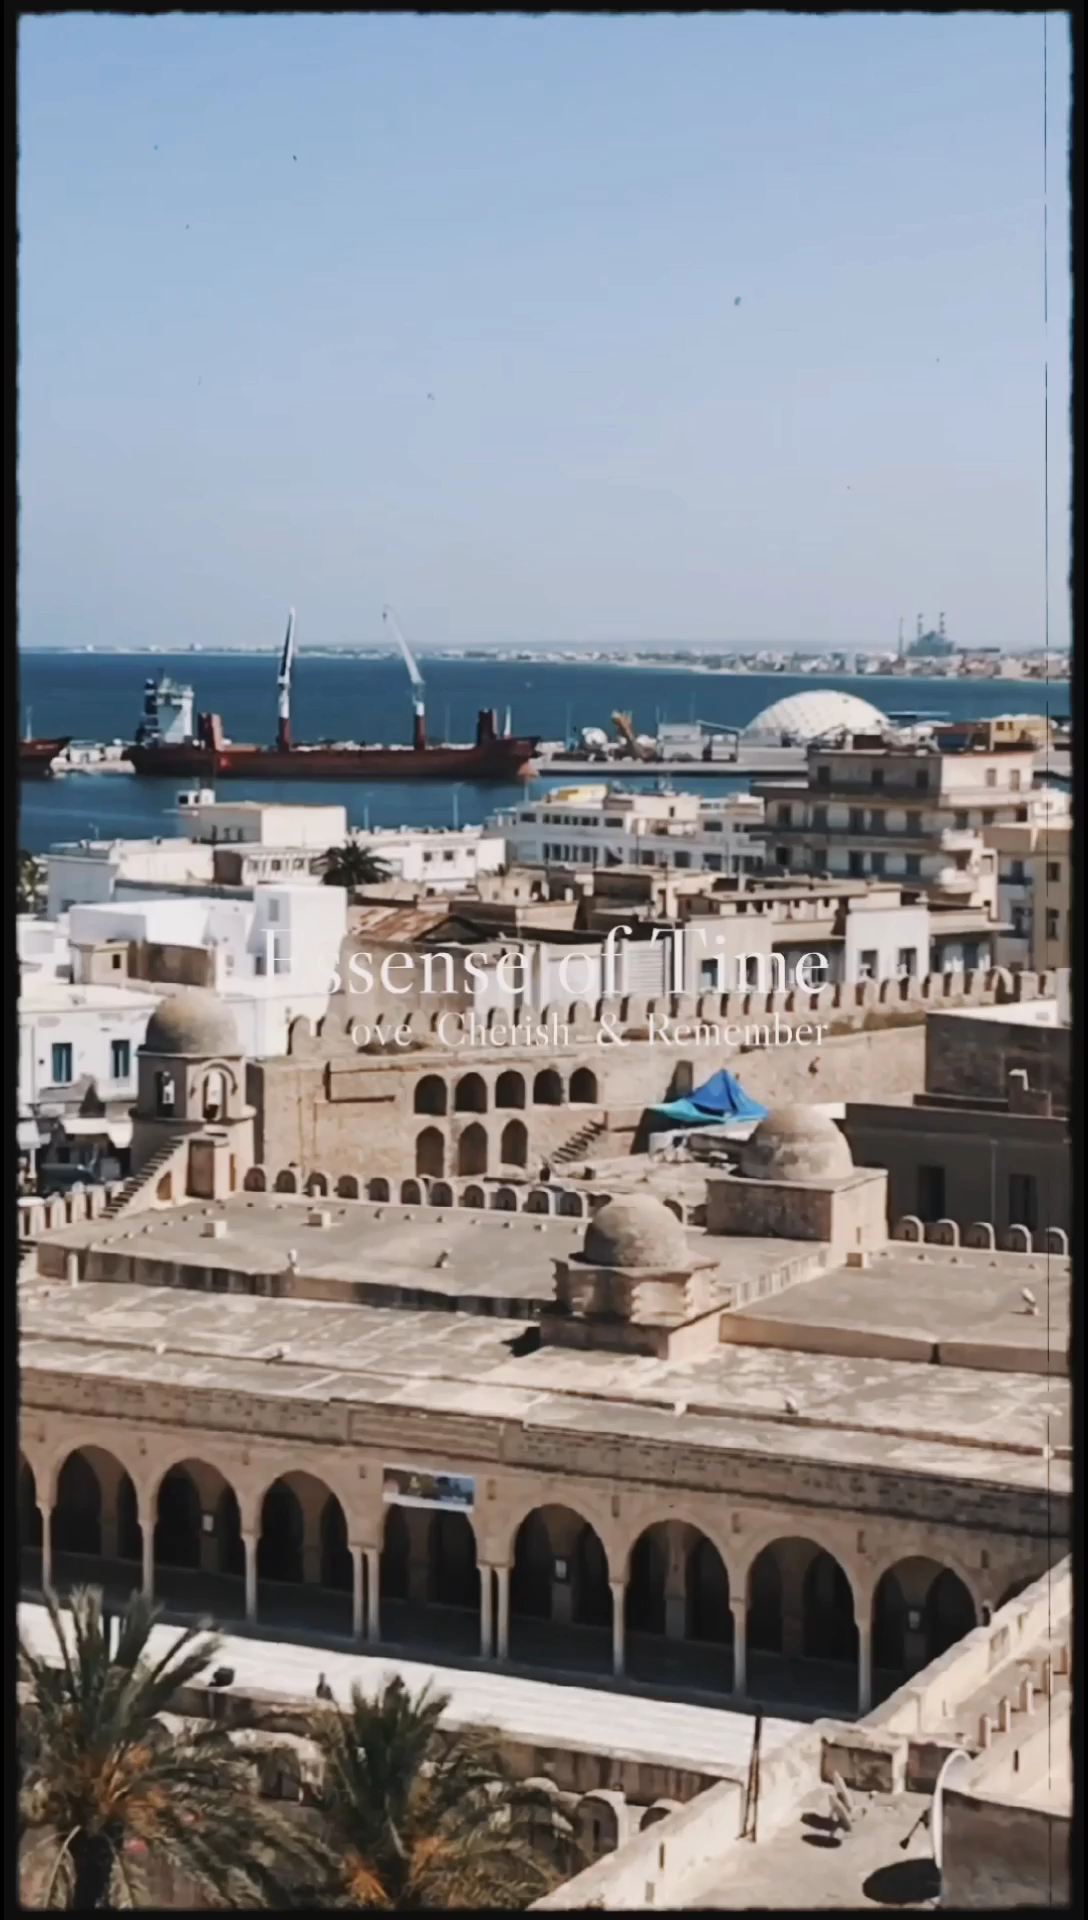 突尼斯，一个坐落在北非的璀璨明珠，拥有悠久的历史、丰富的文化、迷人的风光和独特的风情。这里既有金色的